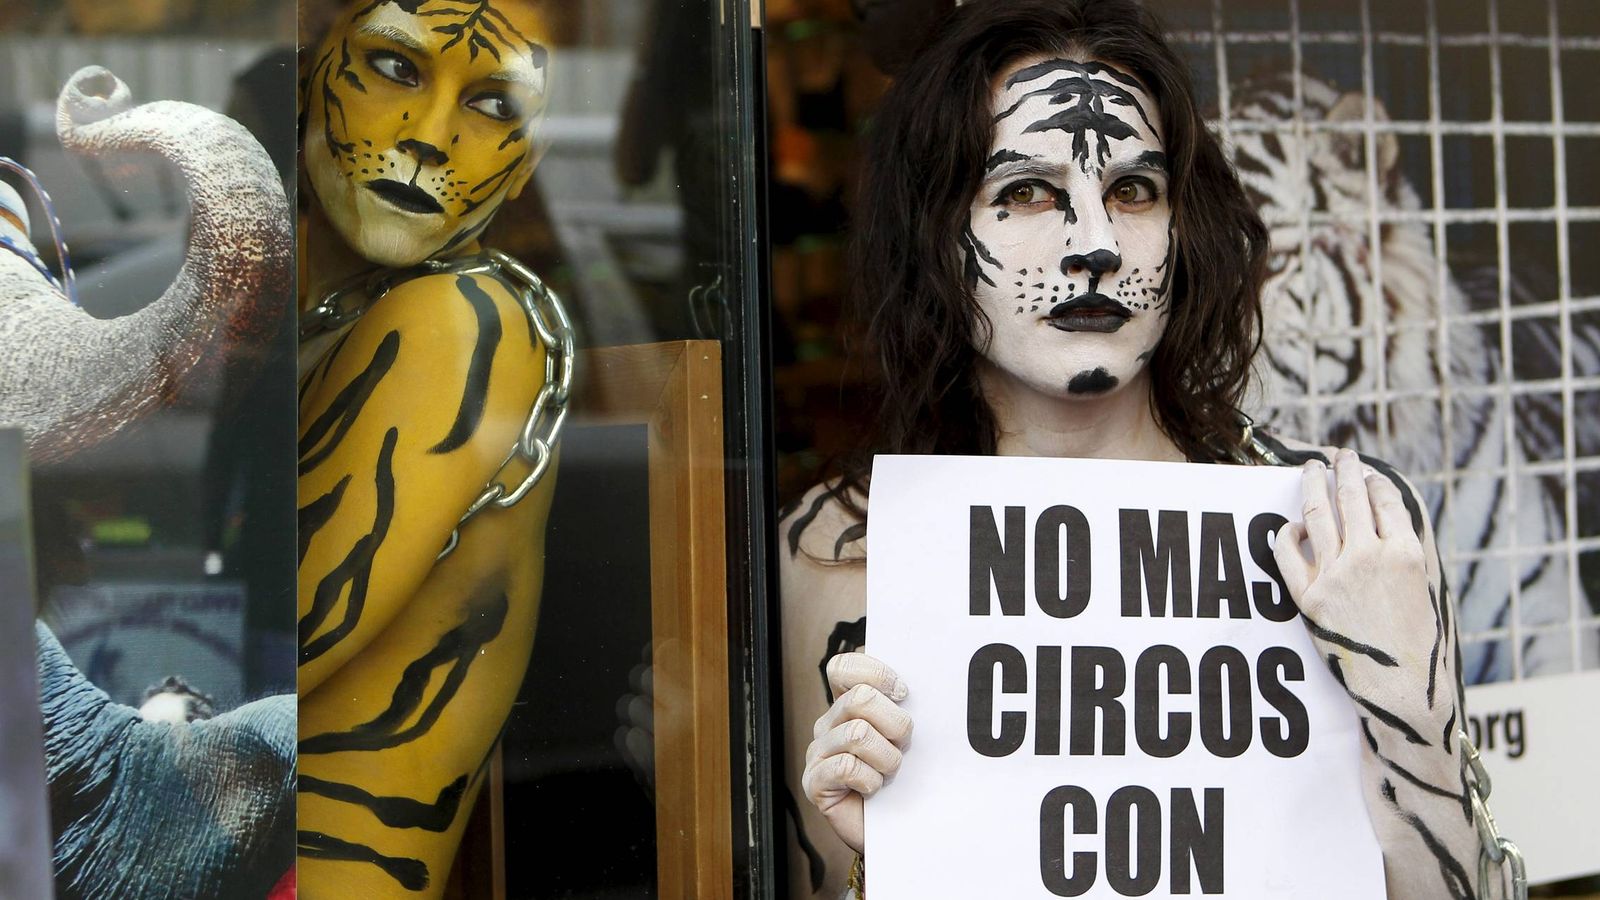 Foto: Protesta en Madrid contra los circos con animales salvajes